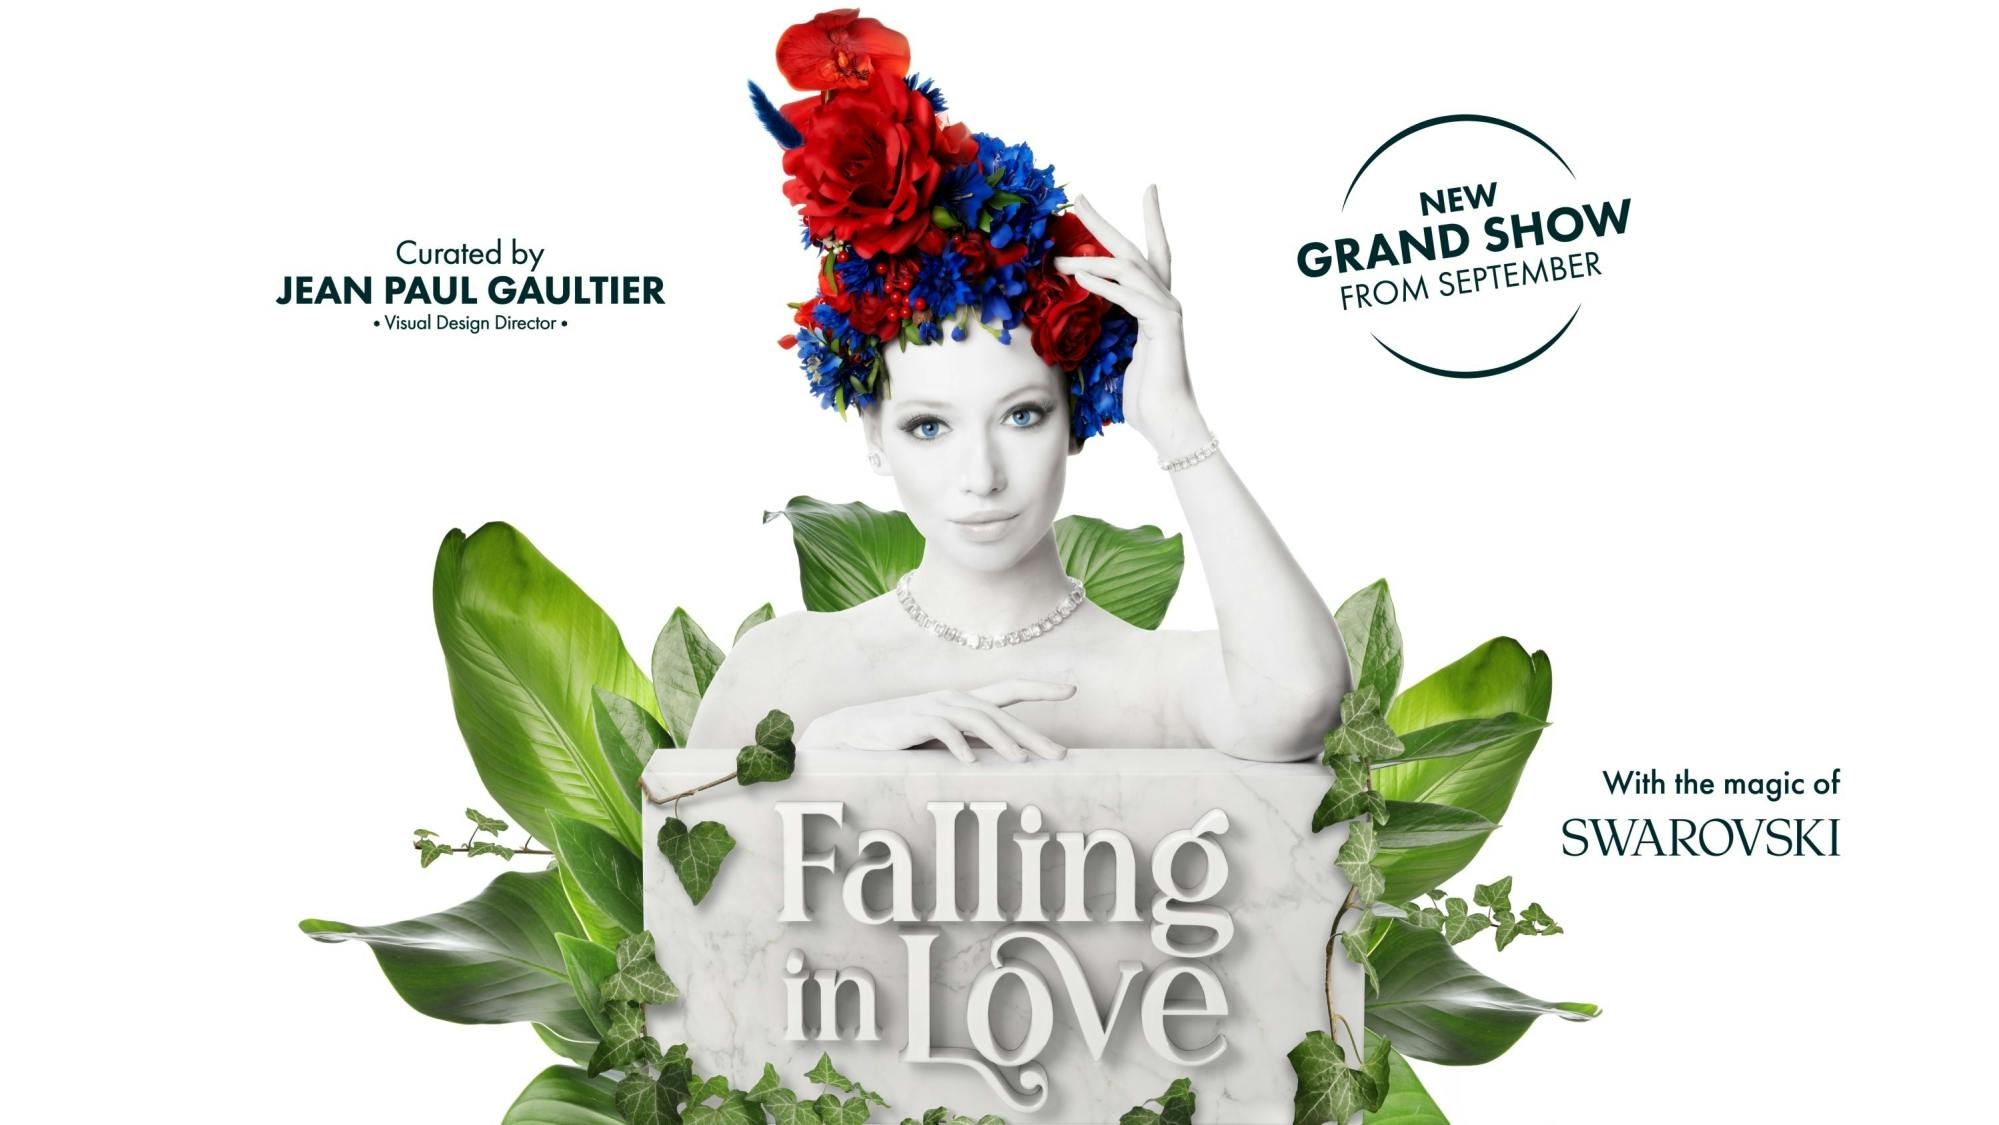 Bilety na wielki koncert Falling in Love w Friedrichstadt-Palast Berlin